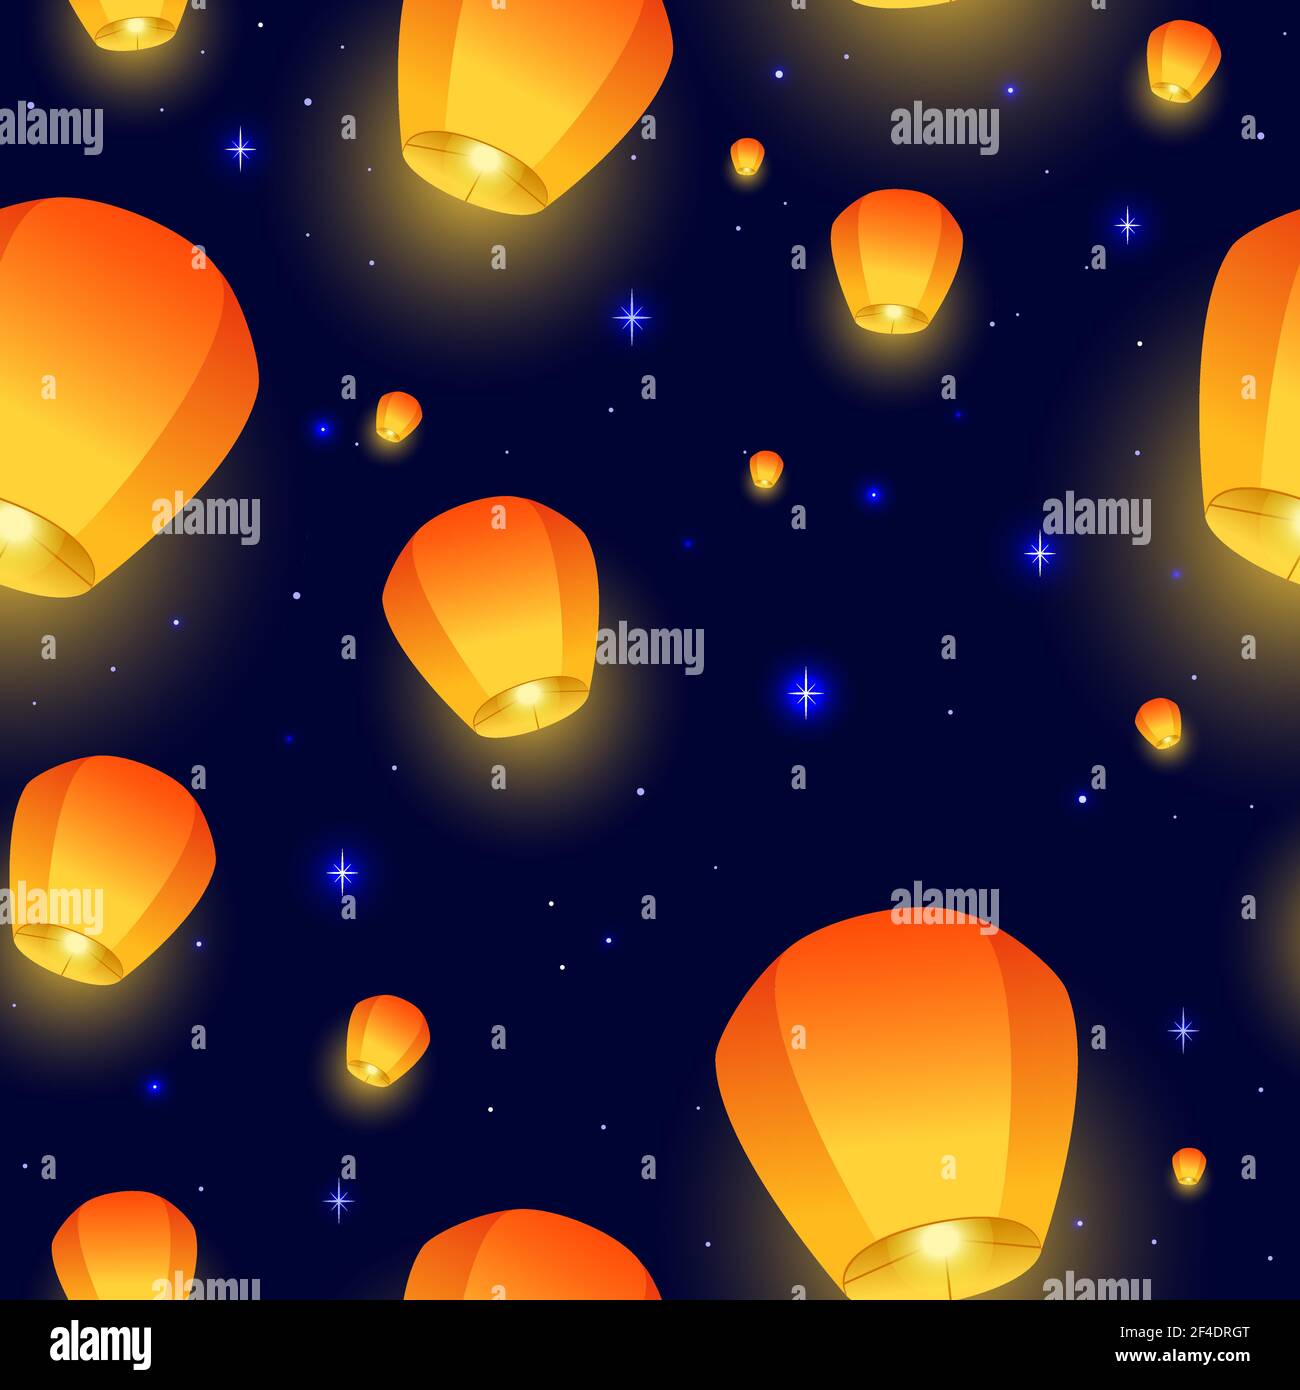 Flying Sky con motivo senza cuciture. Festival di Diwali, Festival di metà autunno o Festa cinese. Lampade galleggianti luminose nel cielo notturno. Illustrazione vettoriale per carta da imballaggio, tessuto, carta da parati. Illustrazione vettoriale. Illustrazione Vettoriale